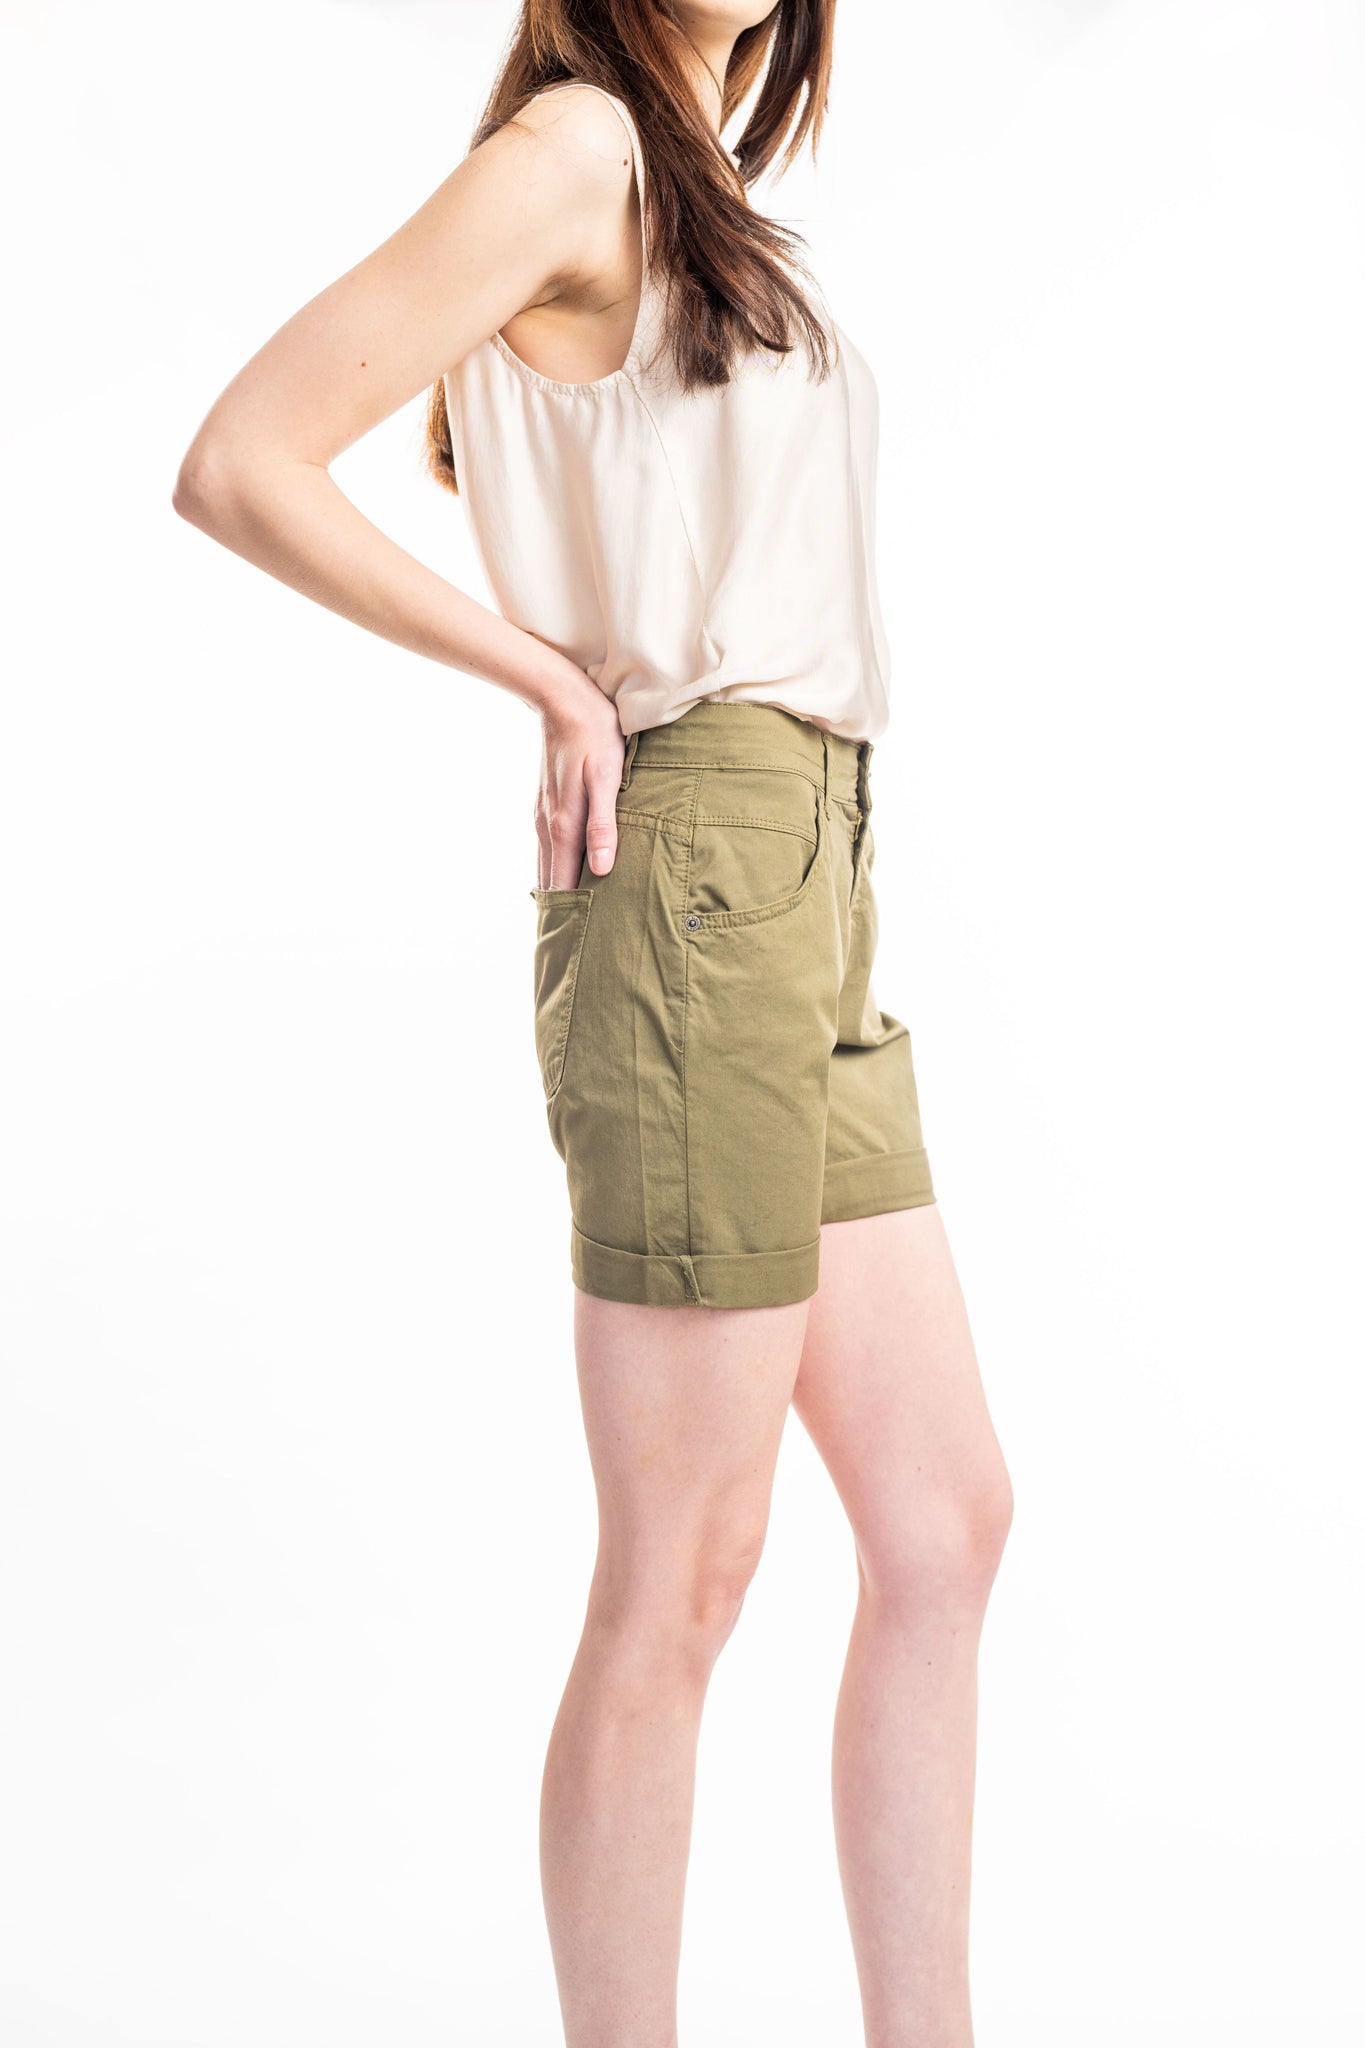 Anv S23 Olive Chino Shorts